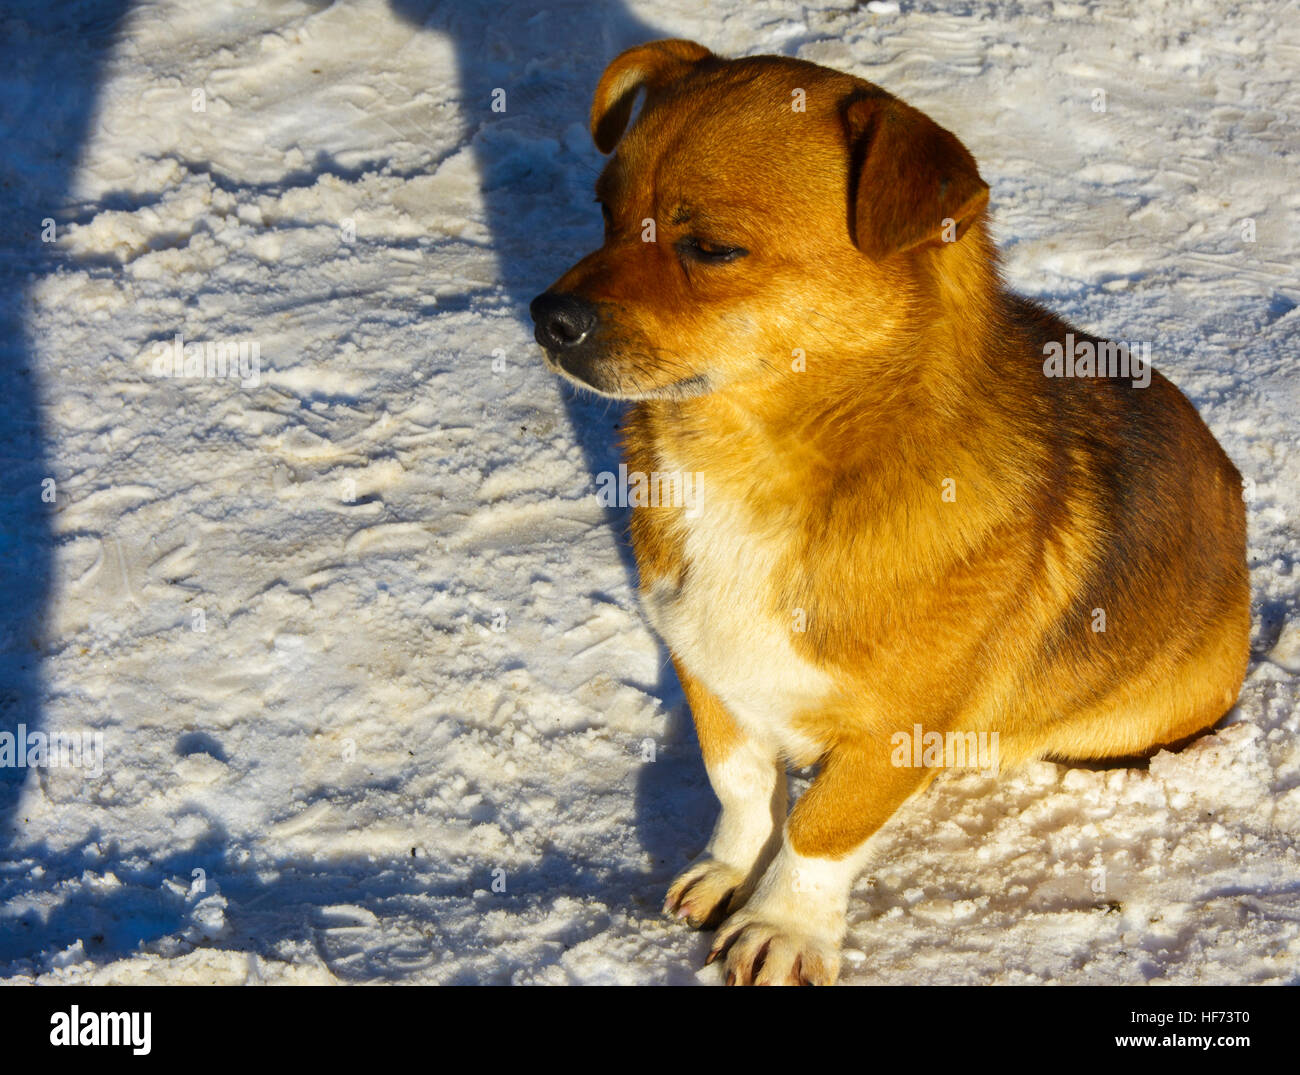 Piccolo congelati non provviste di pedigree cane sulla neve in inverno Foto Stock